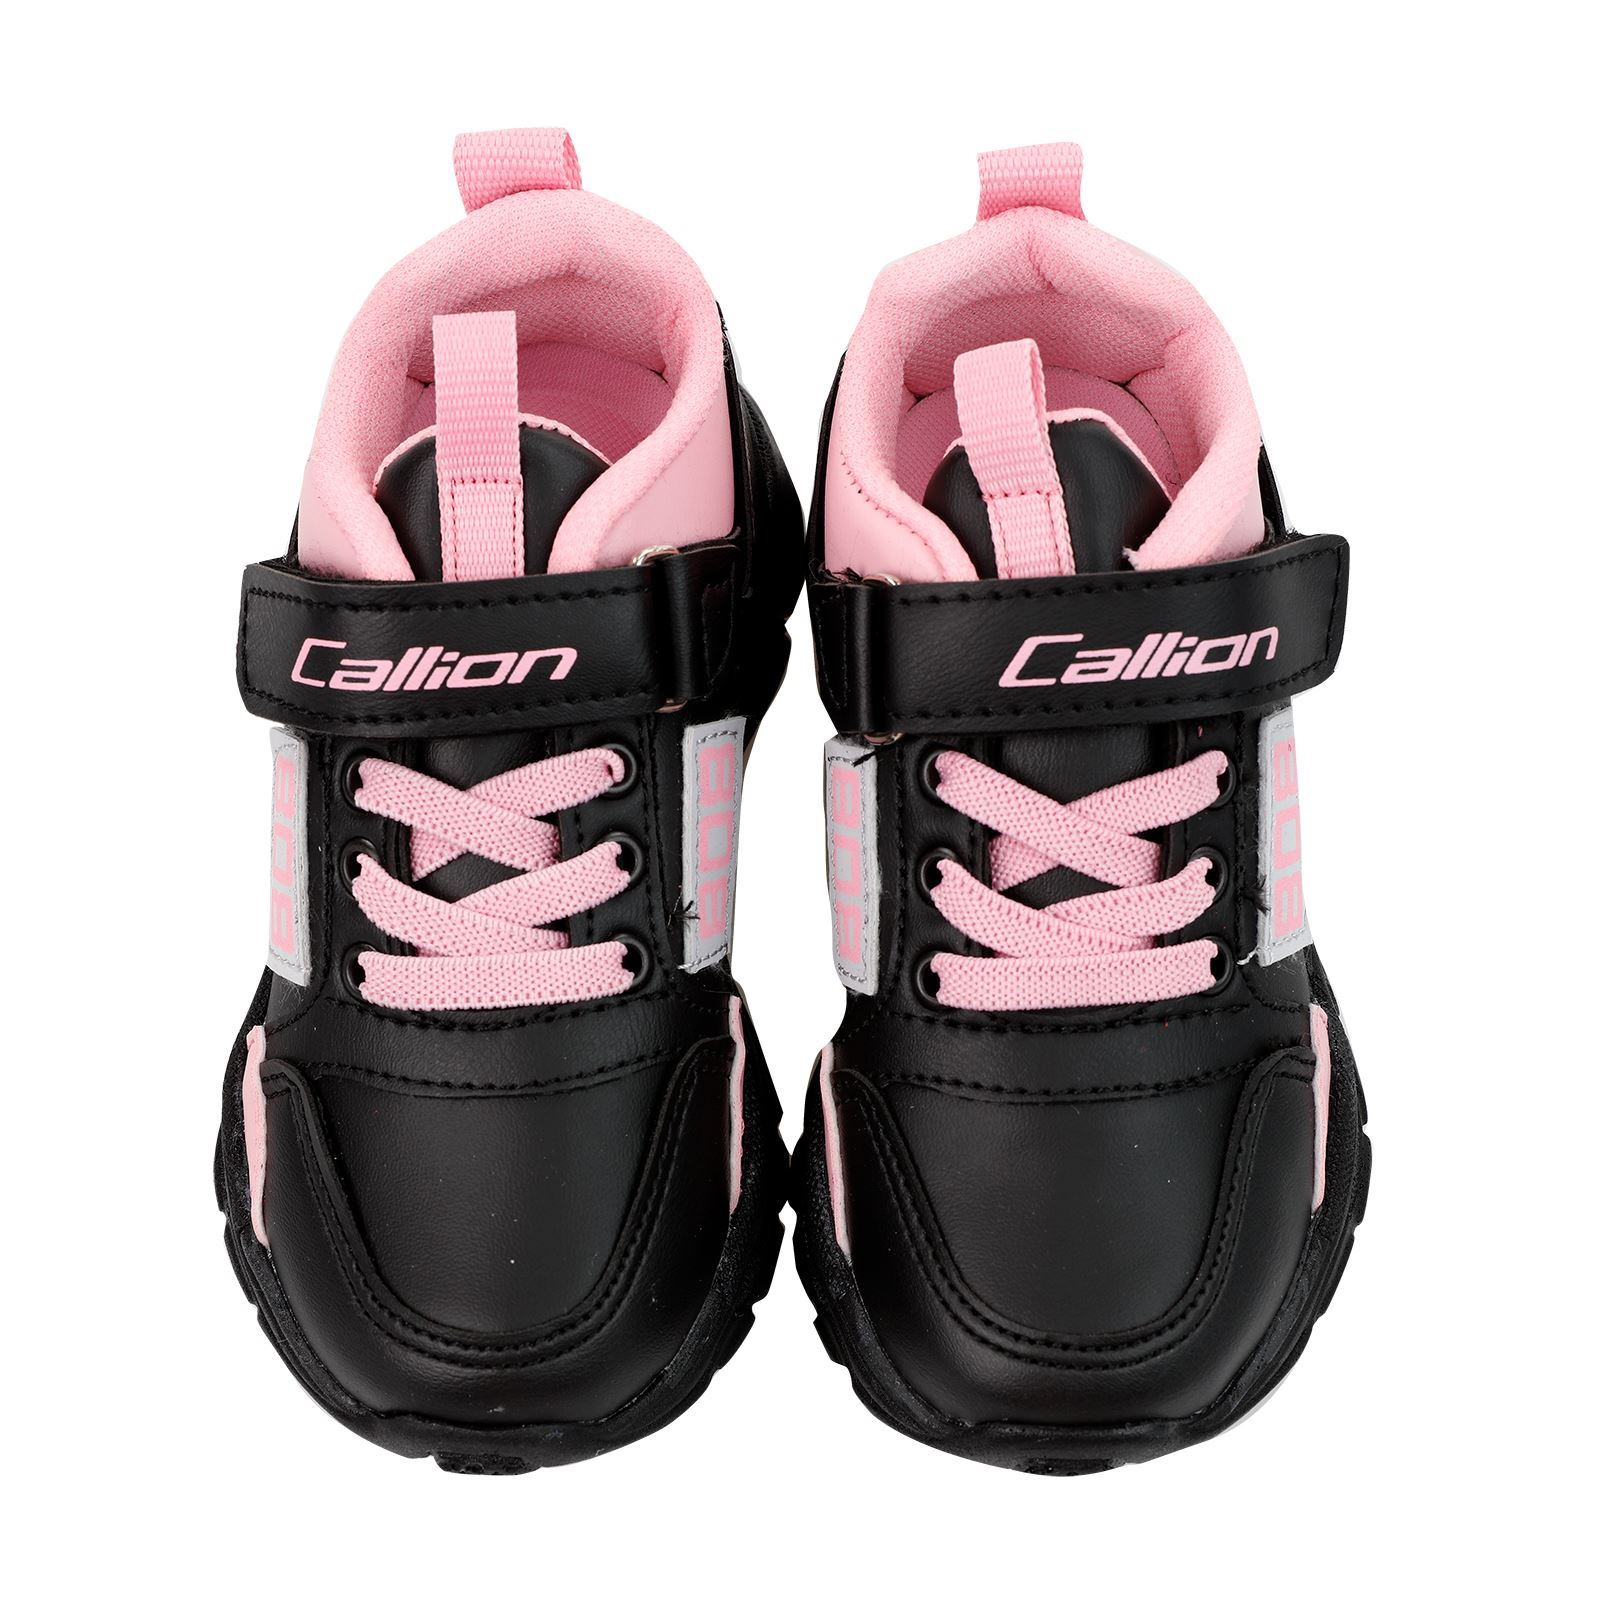 Callion Kız Çocuk Spor Ayakkabı 26-30 Numara Siyah-Pembe